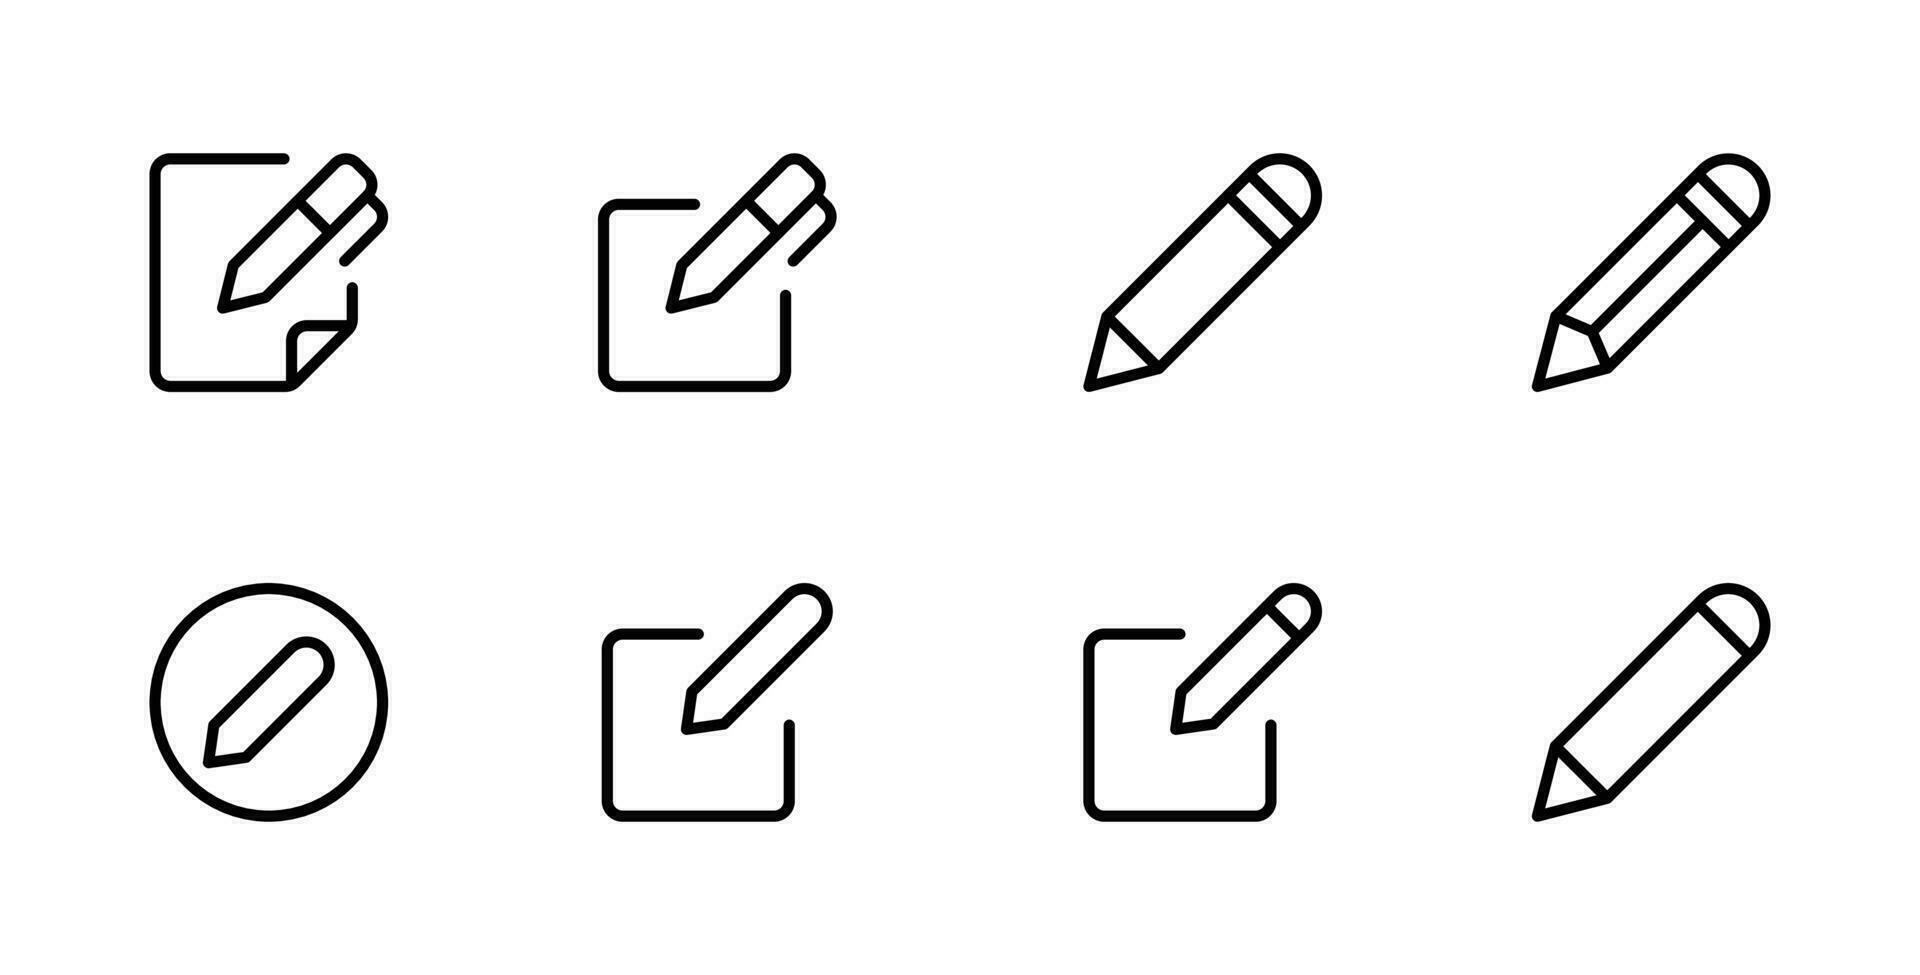 bloco de anotações editar caneta ícone, crio modificar caneta placa botão, lápis ícone, placa acima ícone - edição texto Arquivo documento ícones. escrevendo Nota símbolo vetor ilustração.